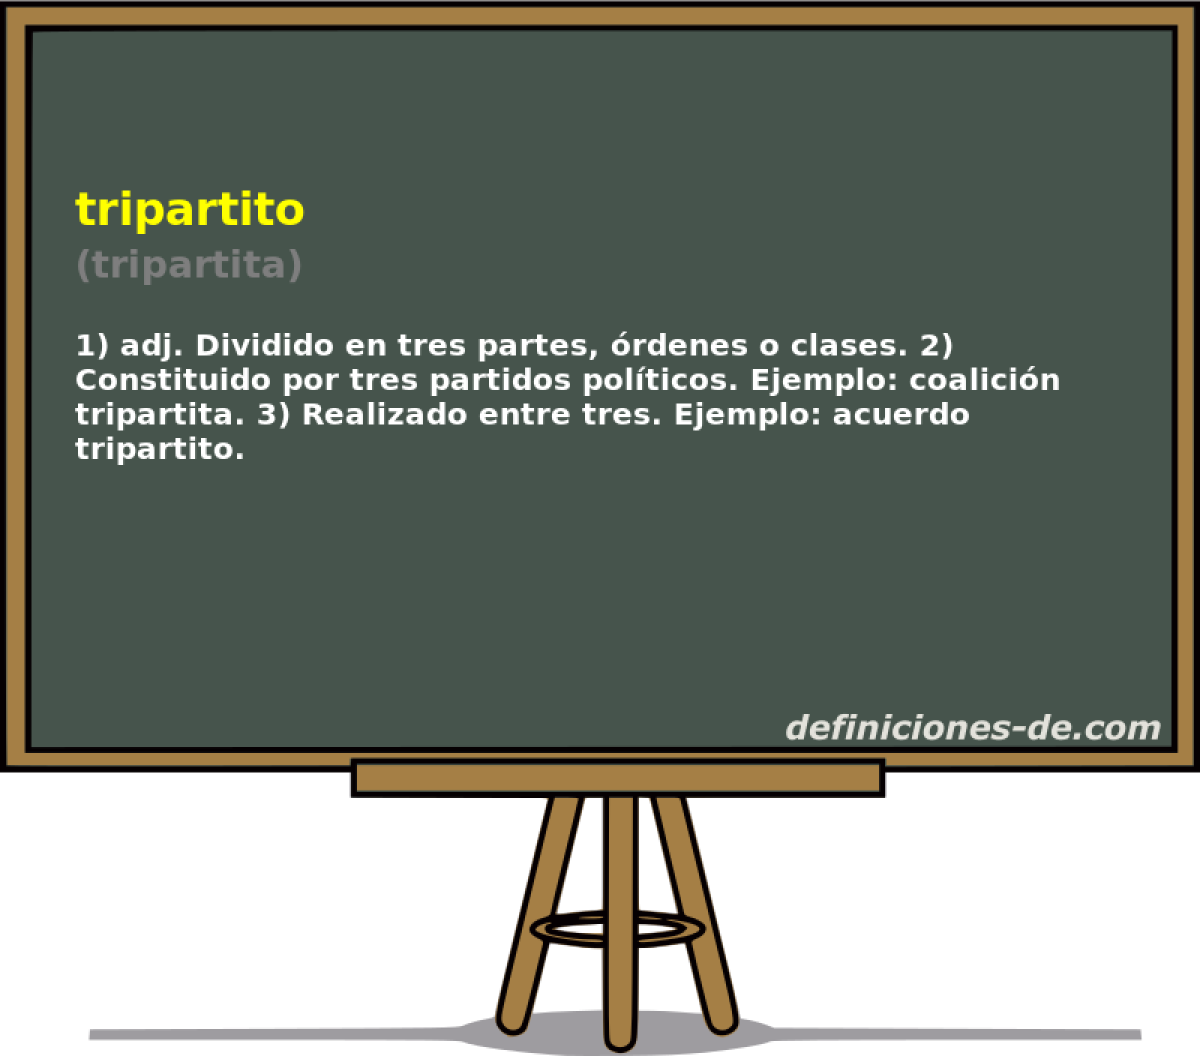 tripartito (tripartita)